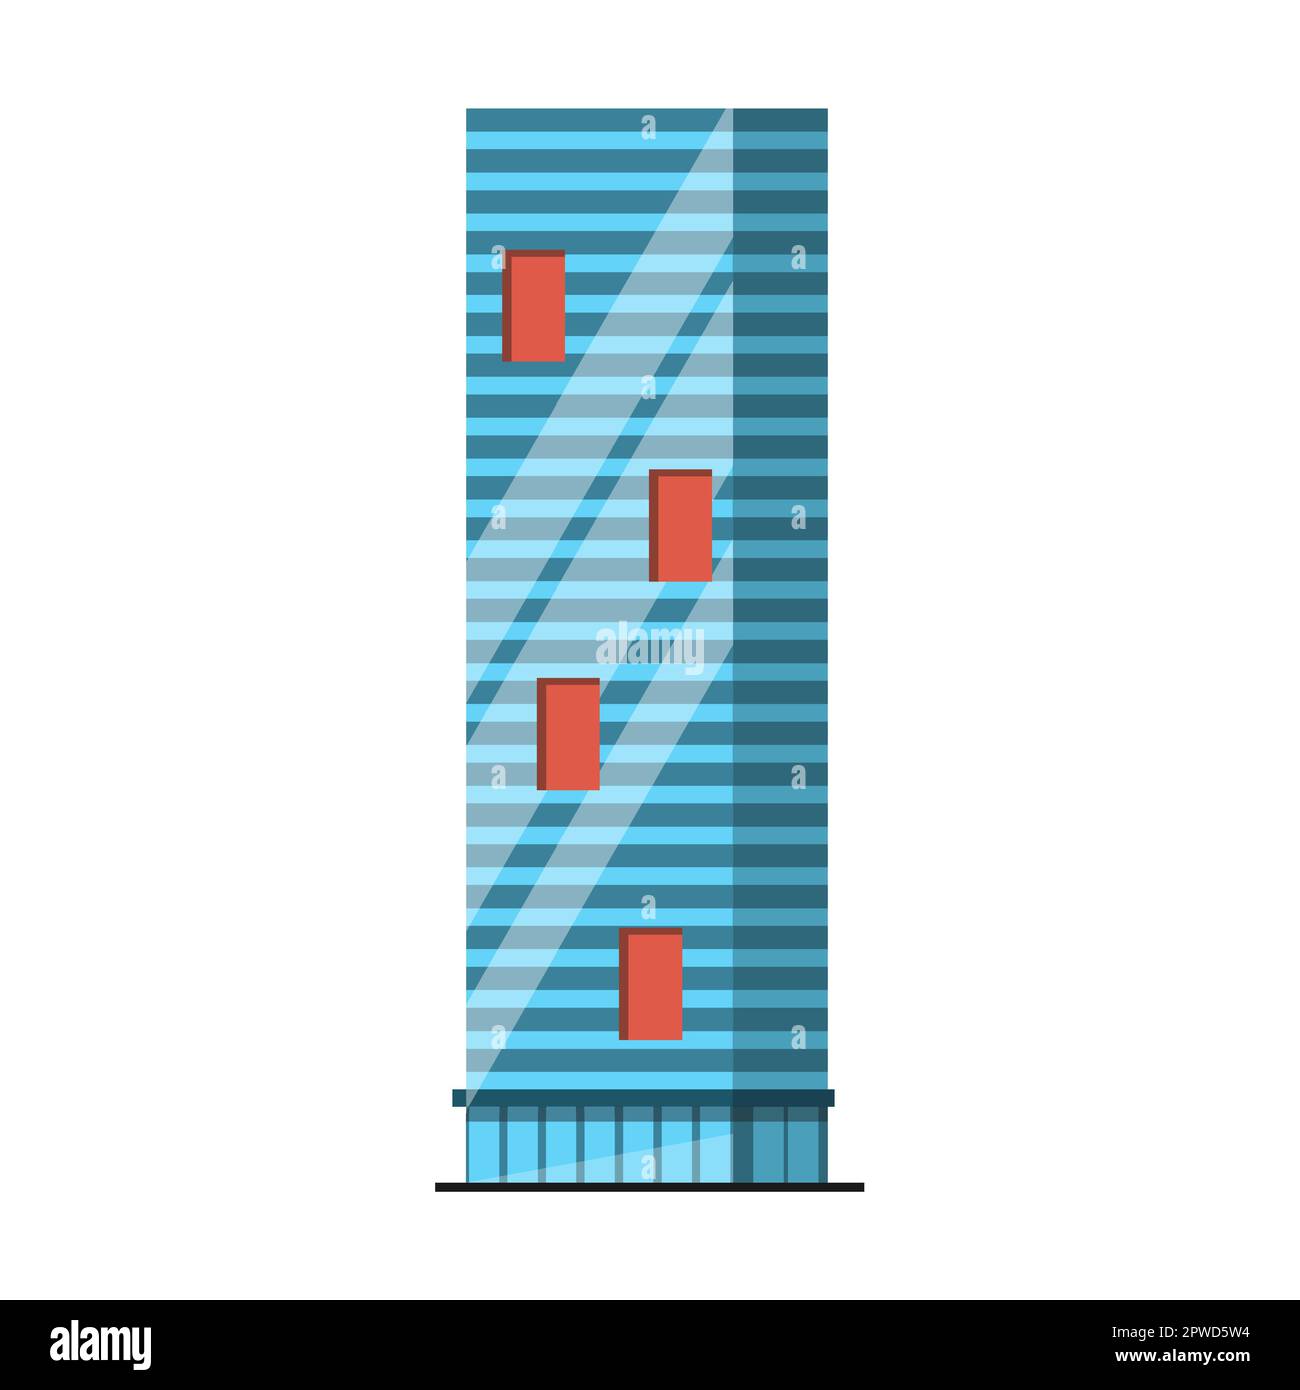 Tour en verre de grande hauteur immeuble de bureaux ou d'appartements, illustration vectorielle. Gratte-ciel comme élément de la ville moderne pour le paysage urbain Illustration de Vecteur